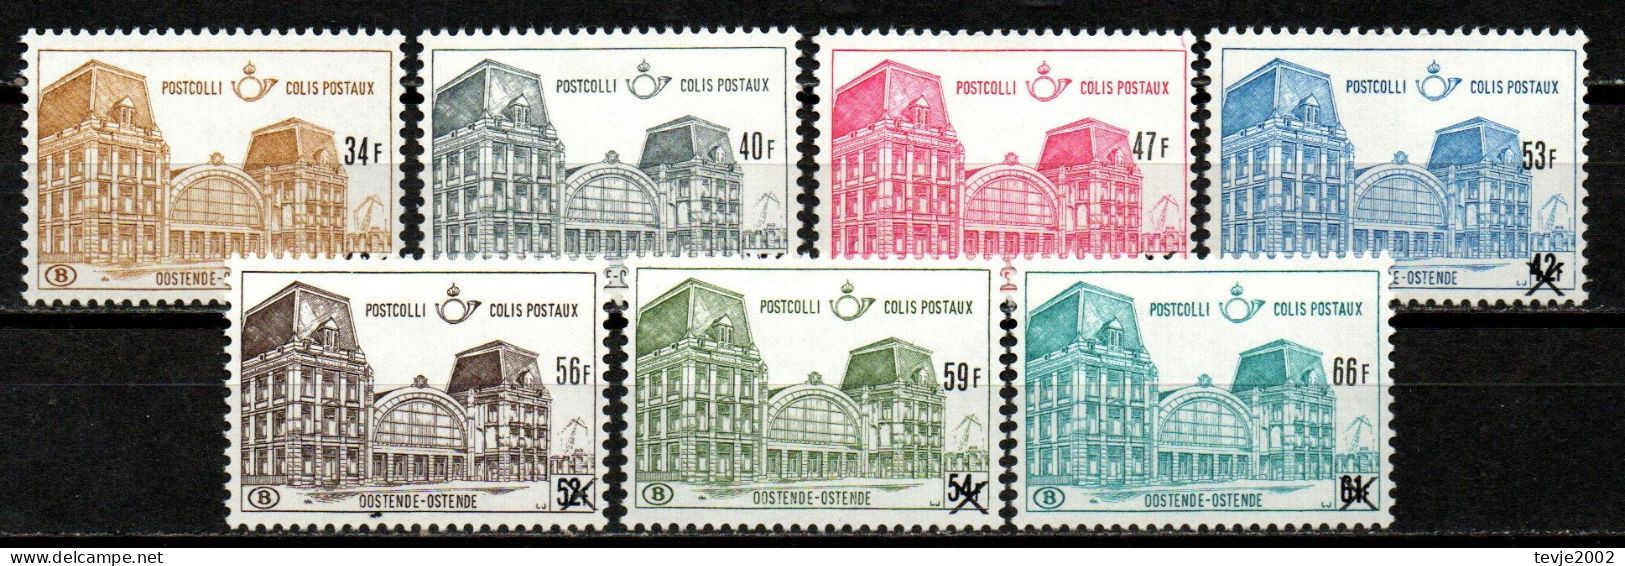 Belgien 1971 - Postpaketmarken Mi.Nr. 76 - 82 - Postfrisch MNH - Neufs